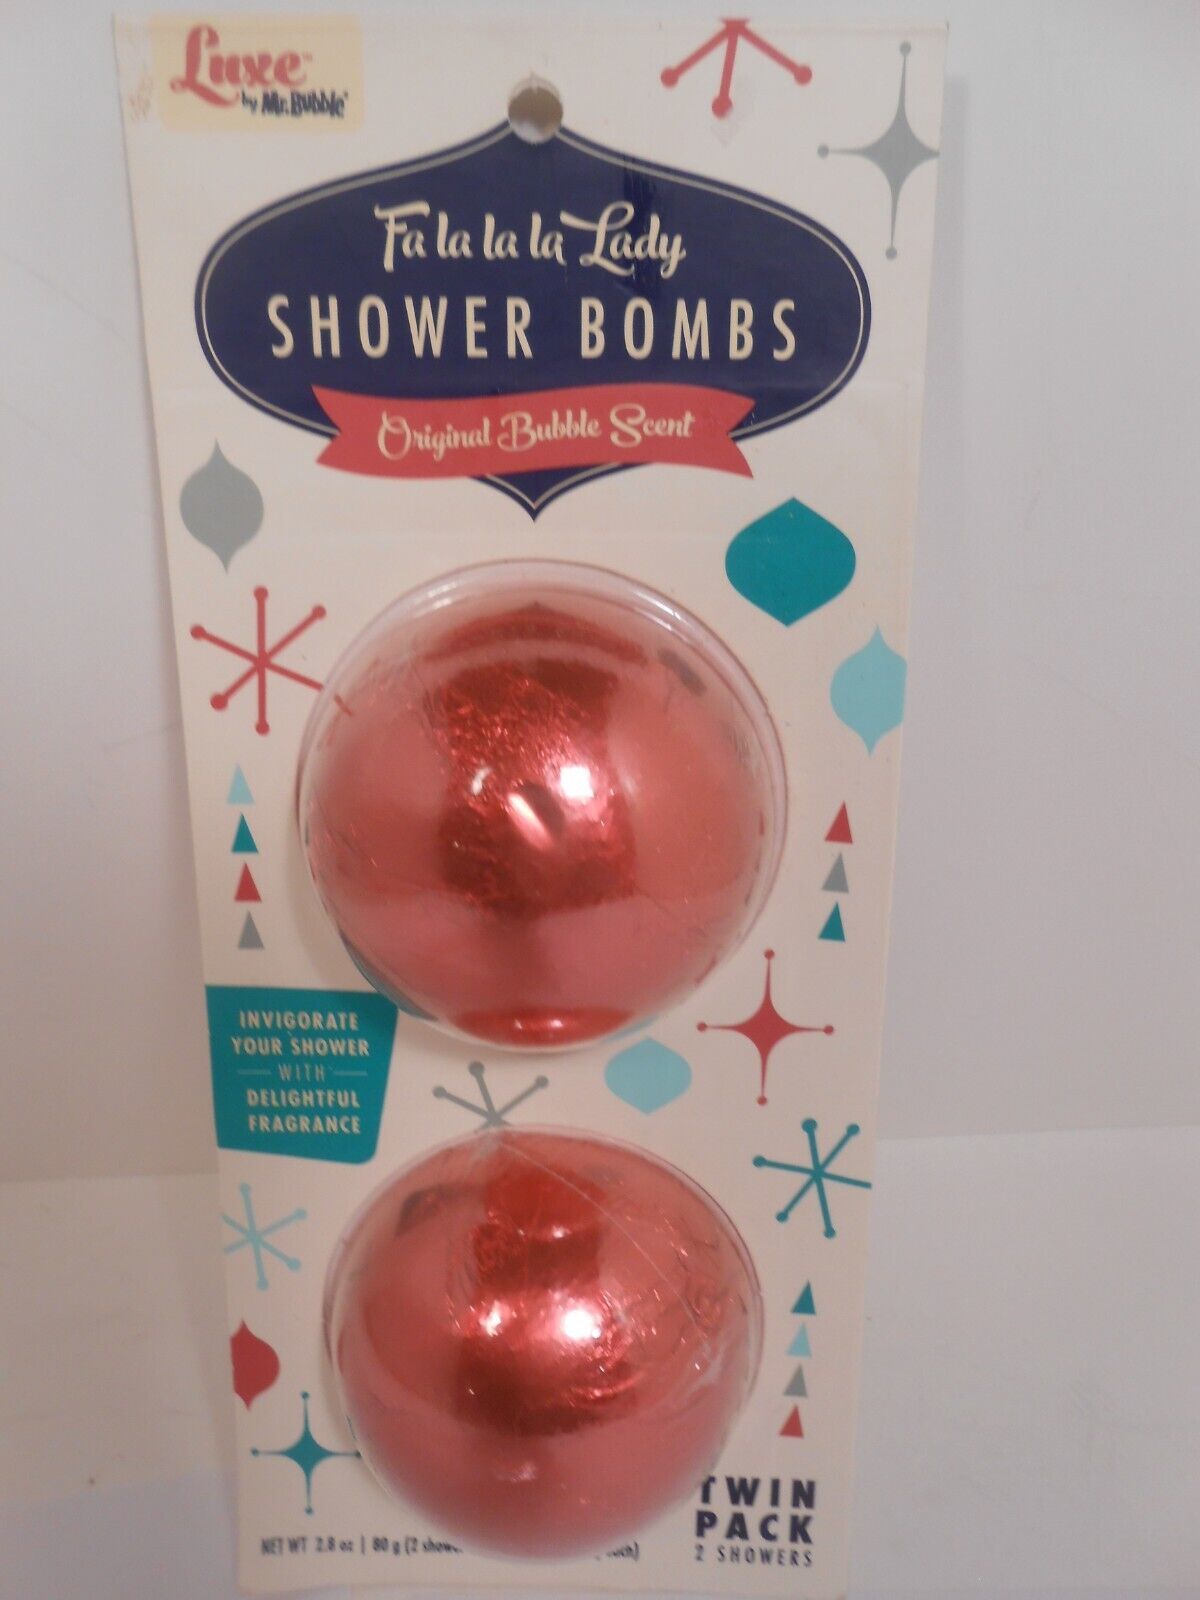 Luxe By Mr. Bubble Fa La La La Lady Original Bubble Scent Twin Pack Shower Bombs - $6.80